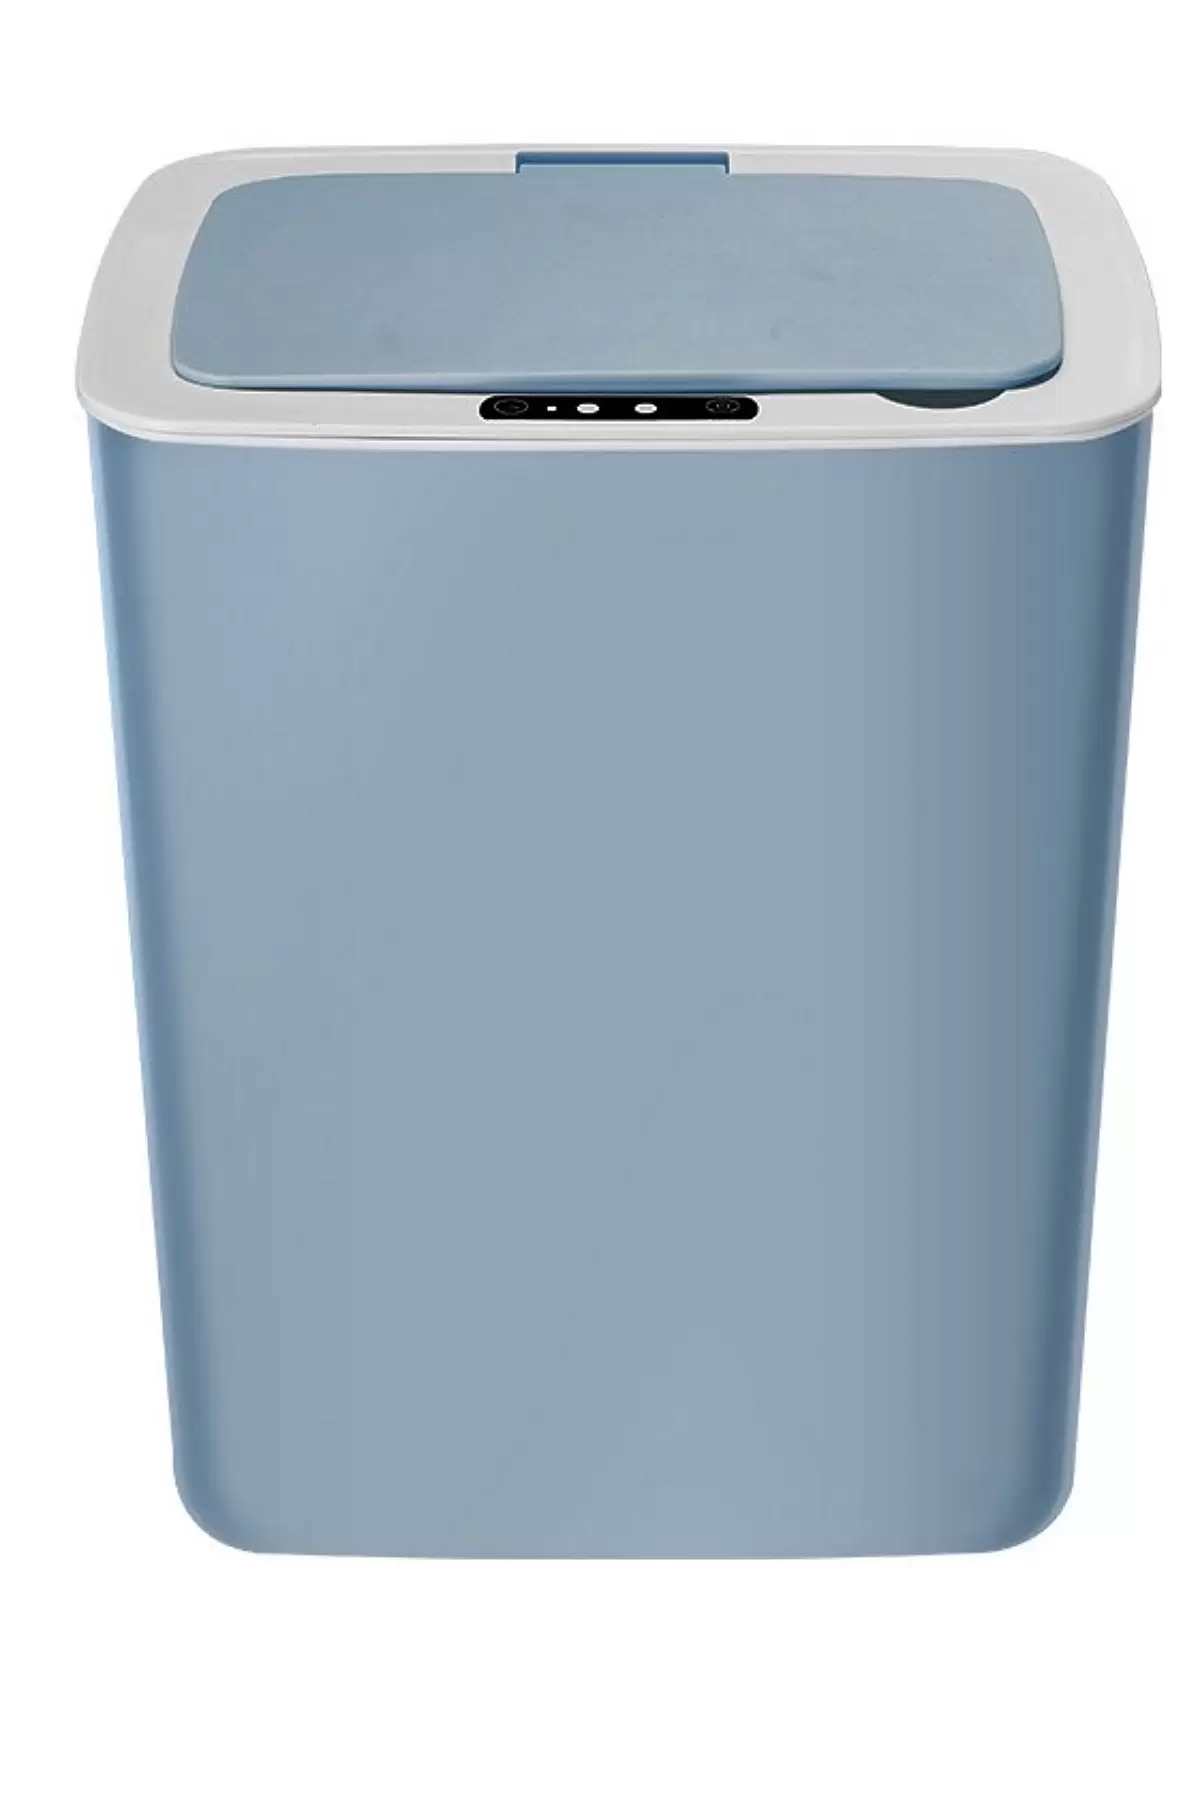 Akıllı Teknolojik Çöp Kutusu Otomatik Aç Kapat Sensörlü Mutfak Banyo Ev Ofis İndüksiyon Çöp Kovası